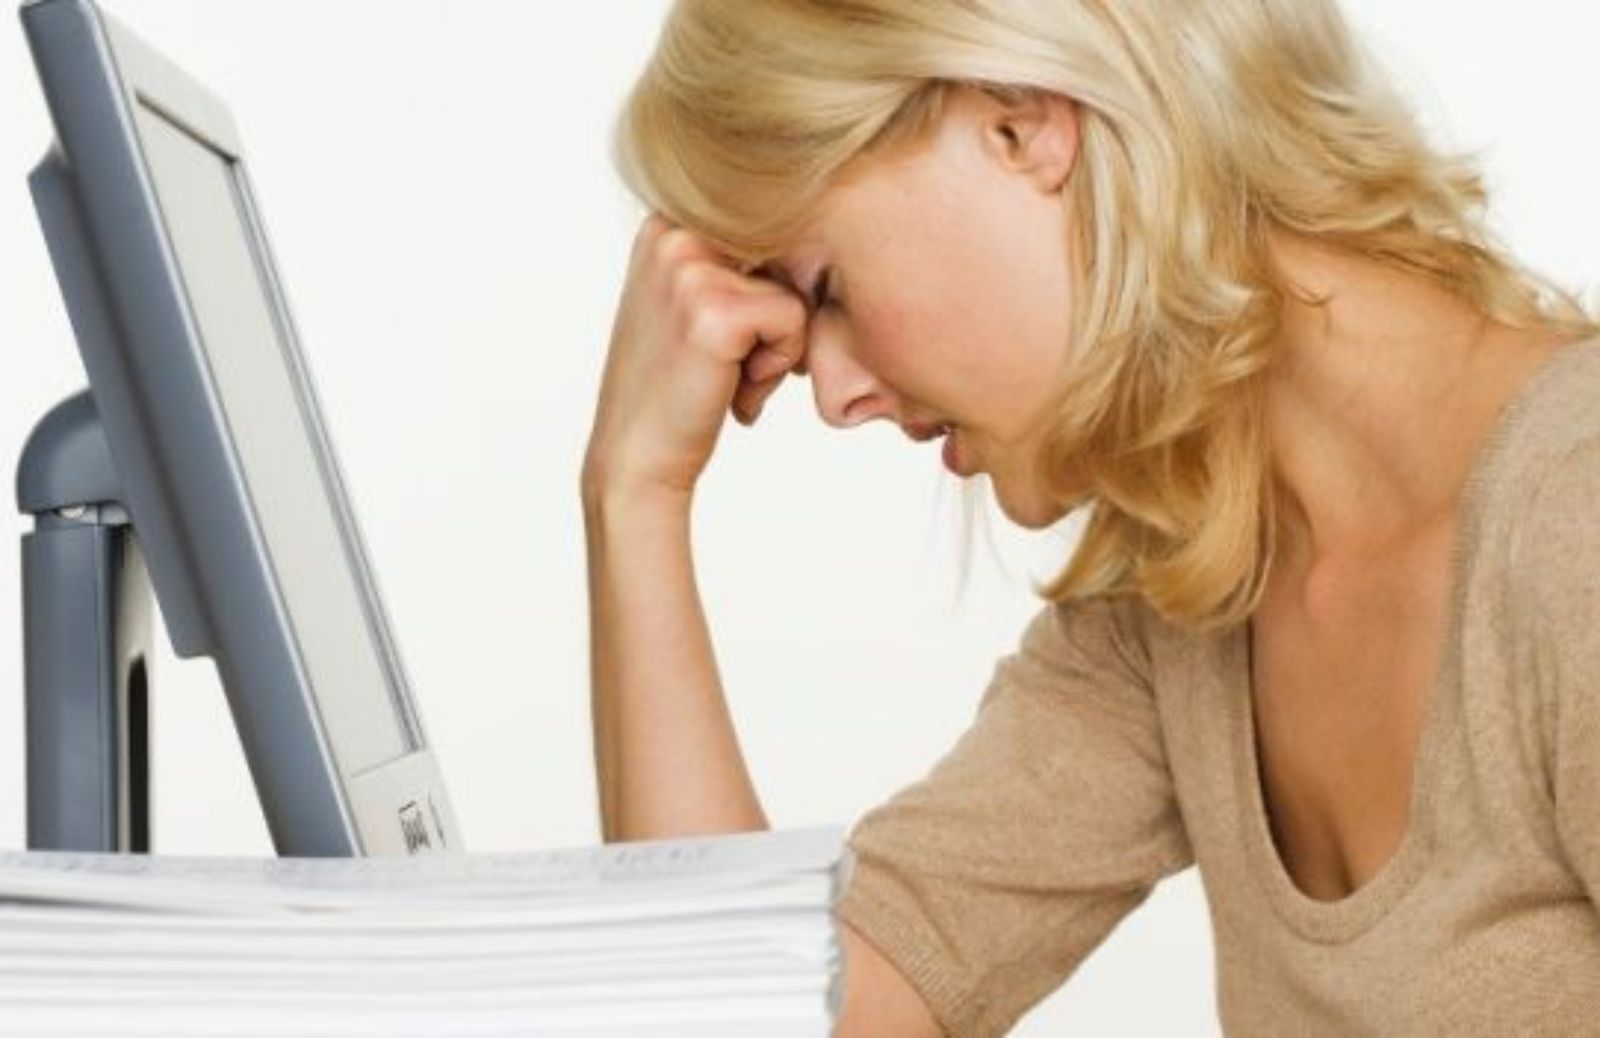 Come riconoscere il burnout, ovvero l'esaurimento da lavoro